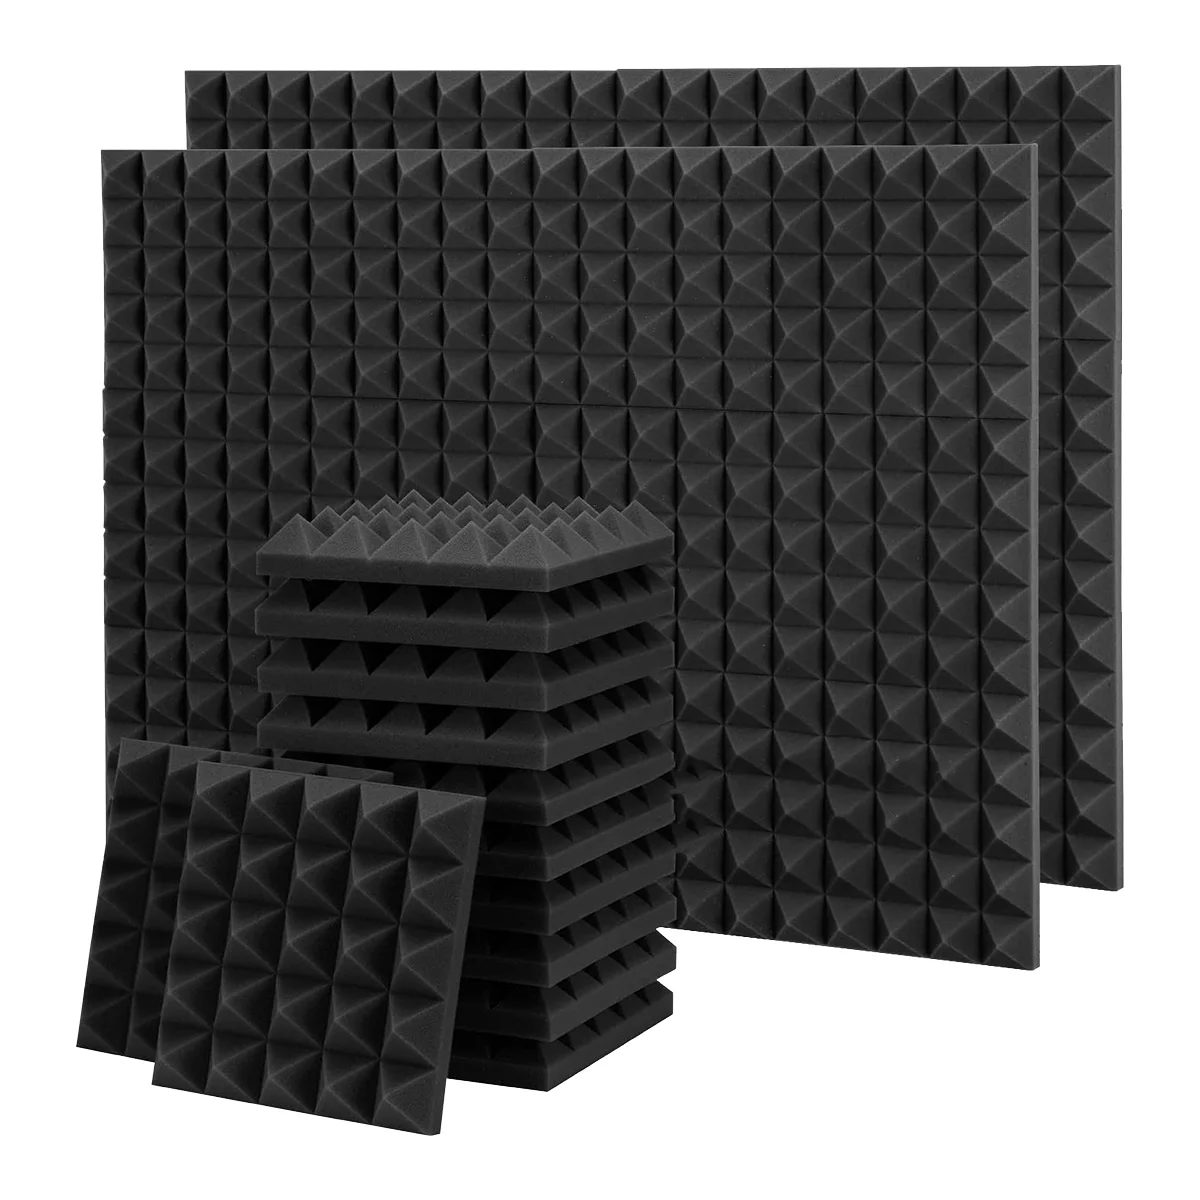 36 Pack Pyramidy Akustické Pěny,9.8 X 9.8 X 2 Inch Zvuk Důkaz, Pěna,Pohlcující Zvuk Deska pro Zdi,Studio, dům a Kancelář